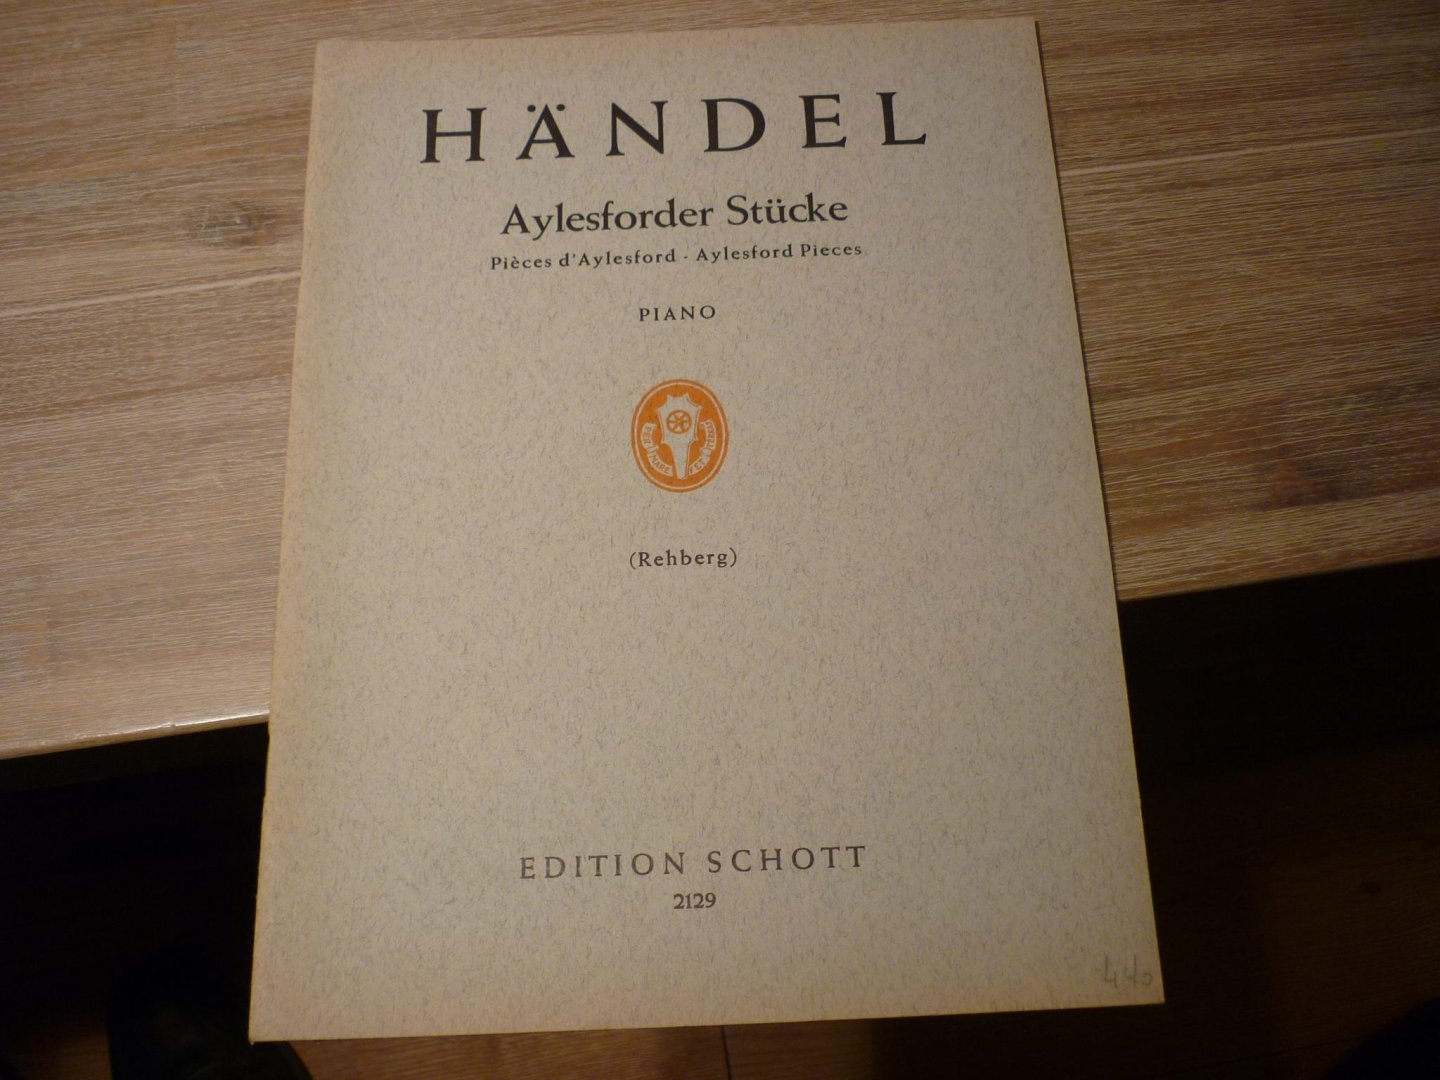 Händel; Georg Friedrich (1685–1759) - Aylesforder Stücke aus den "Stücken für Clavicembalo" Klaviermusik der Vorklassik - muziekboek voor Klavecimbel (piano)